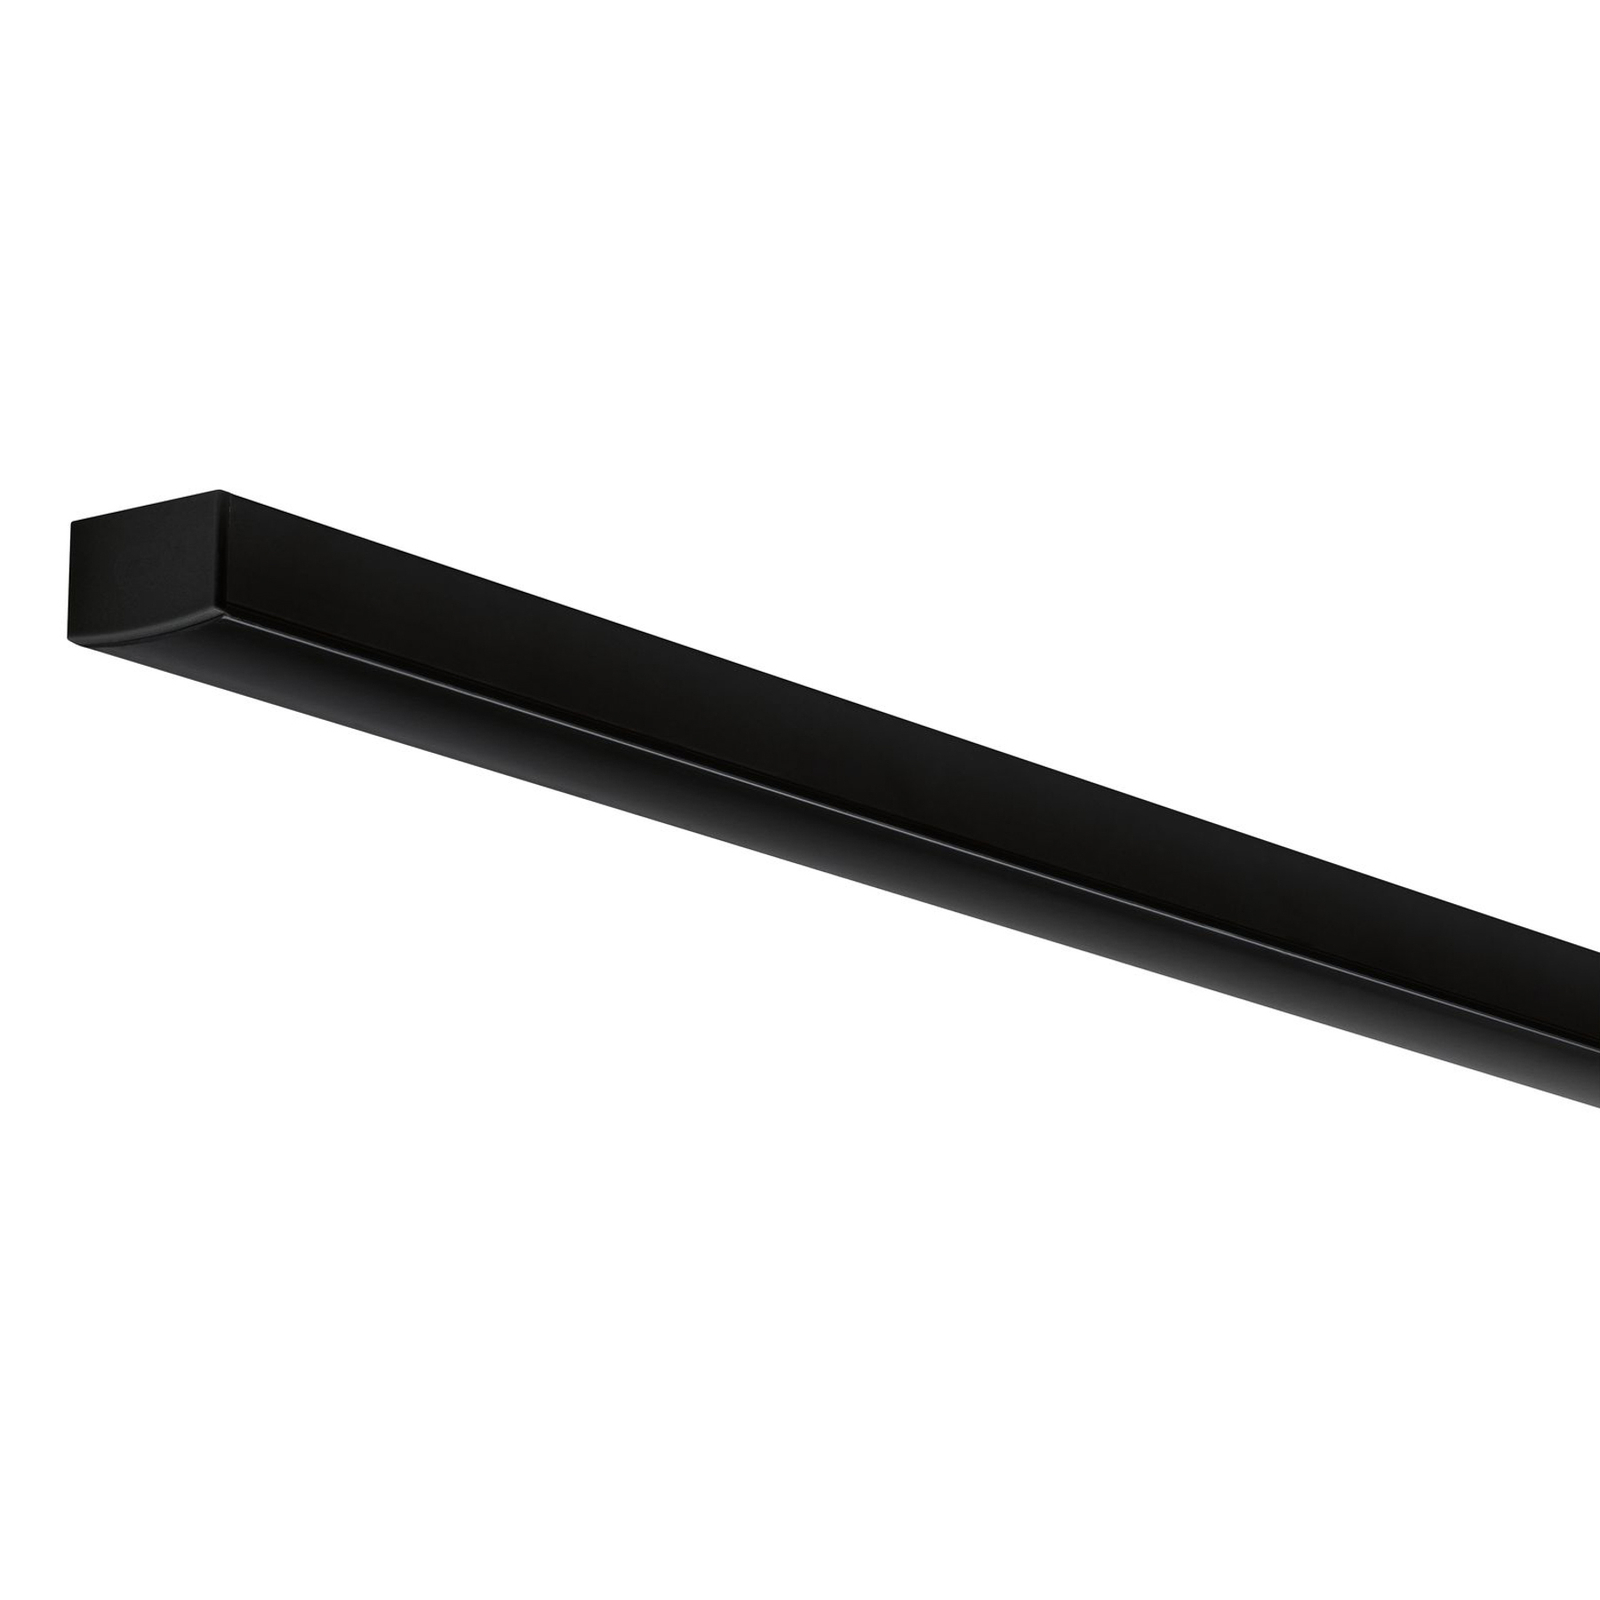 Paulmann Square profil svart diffusor svart 1 m